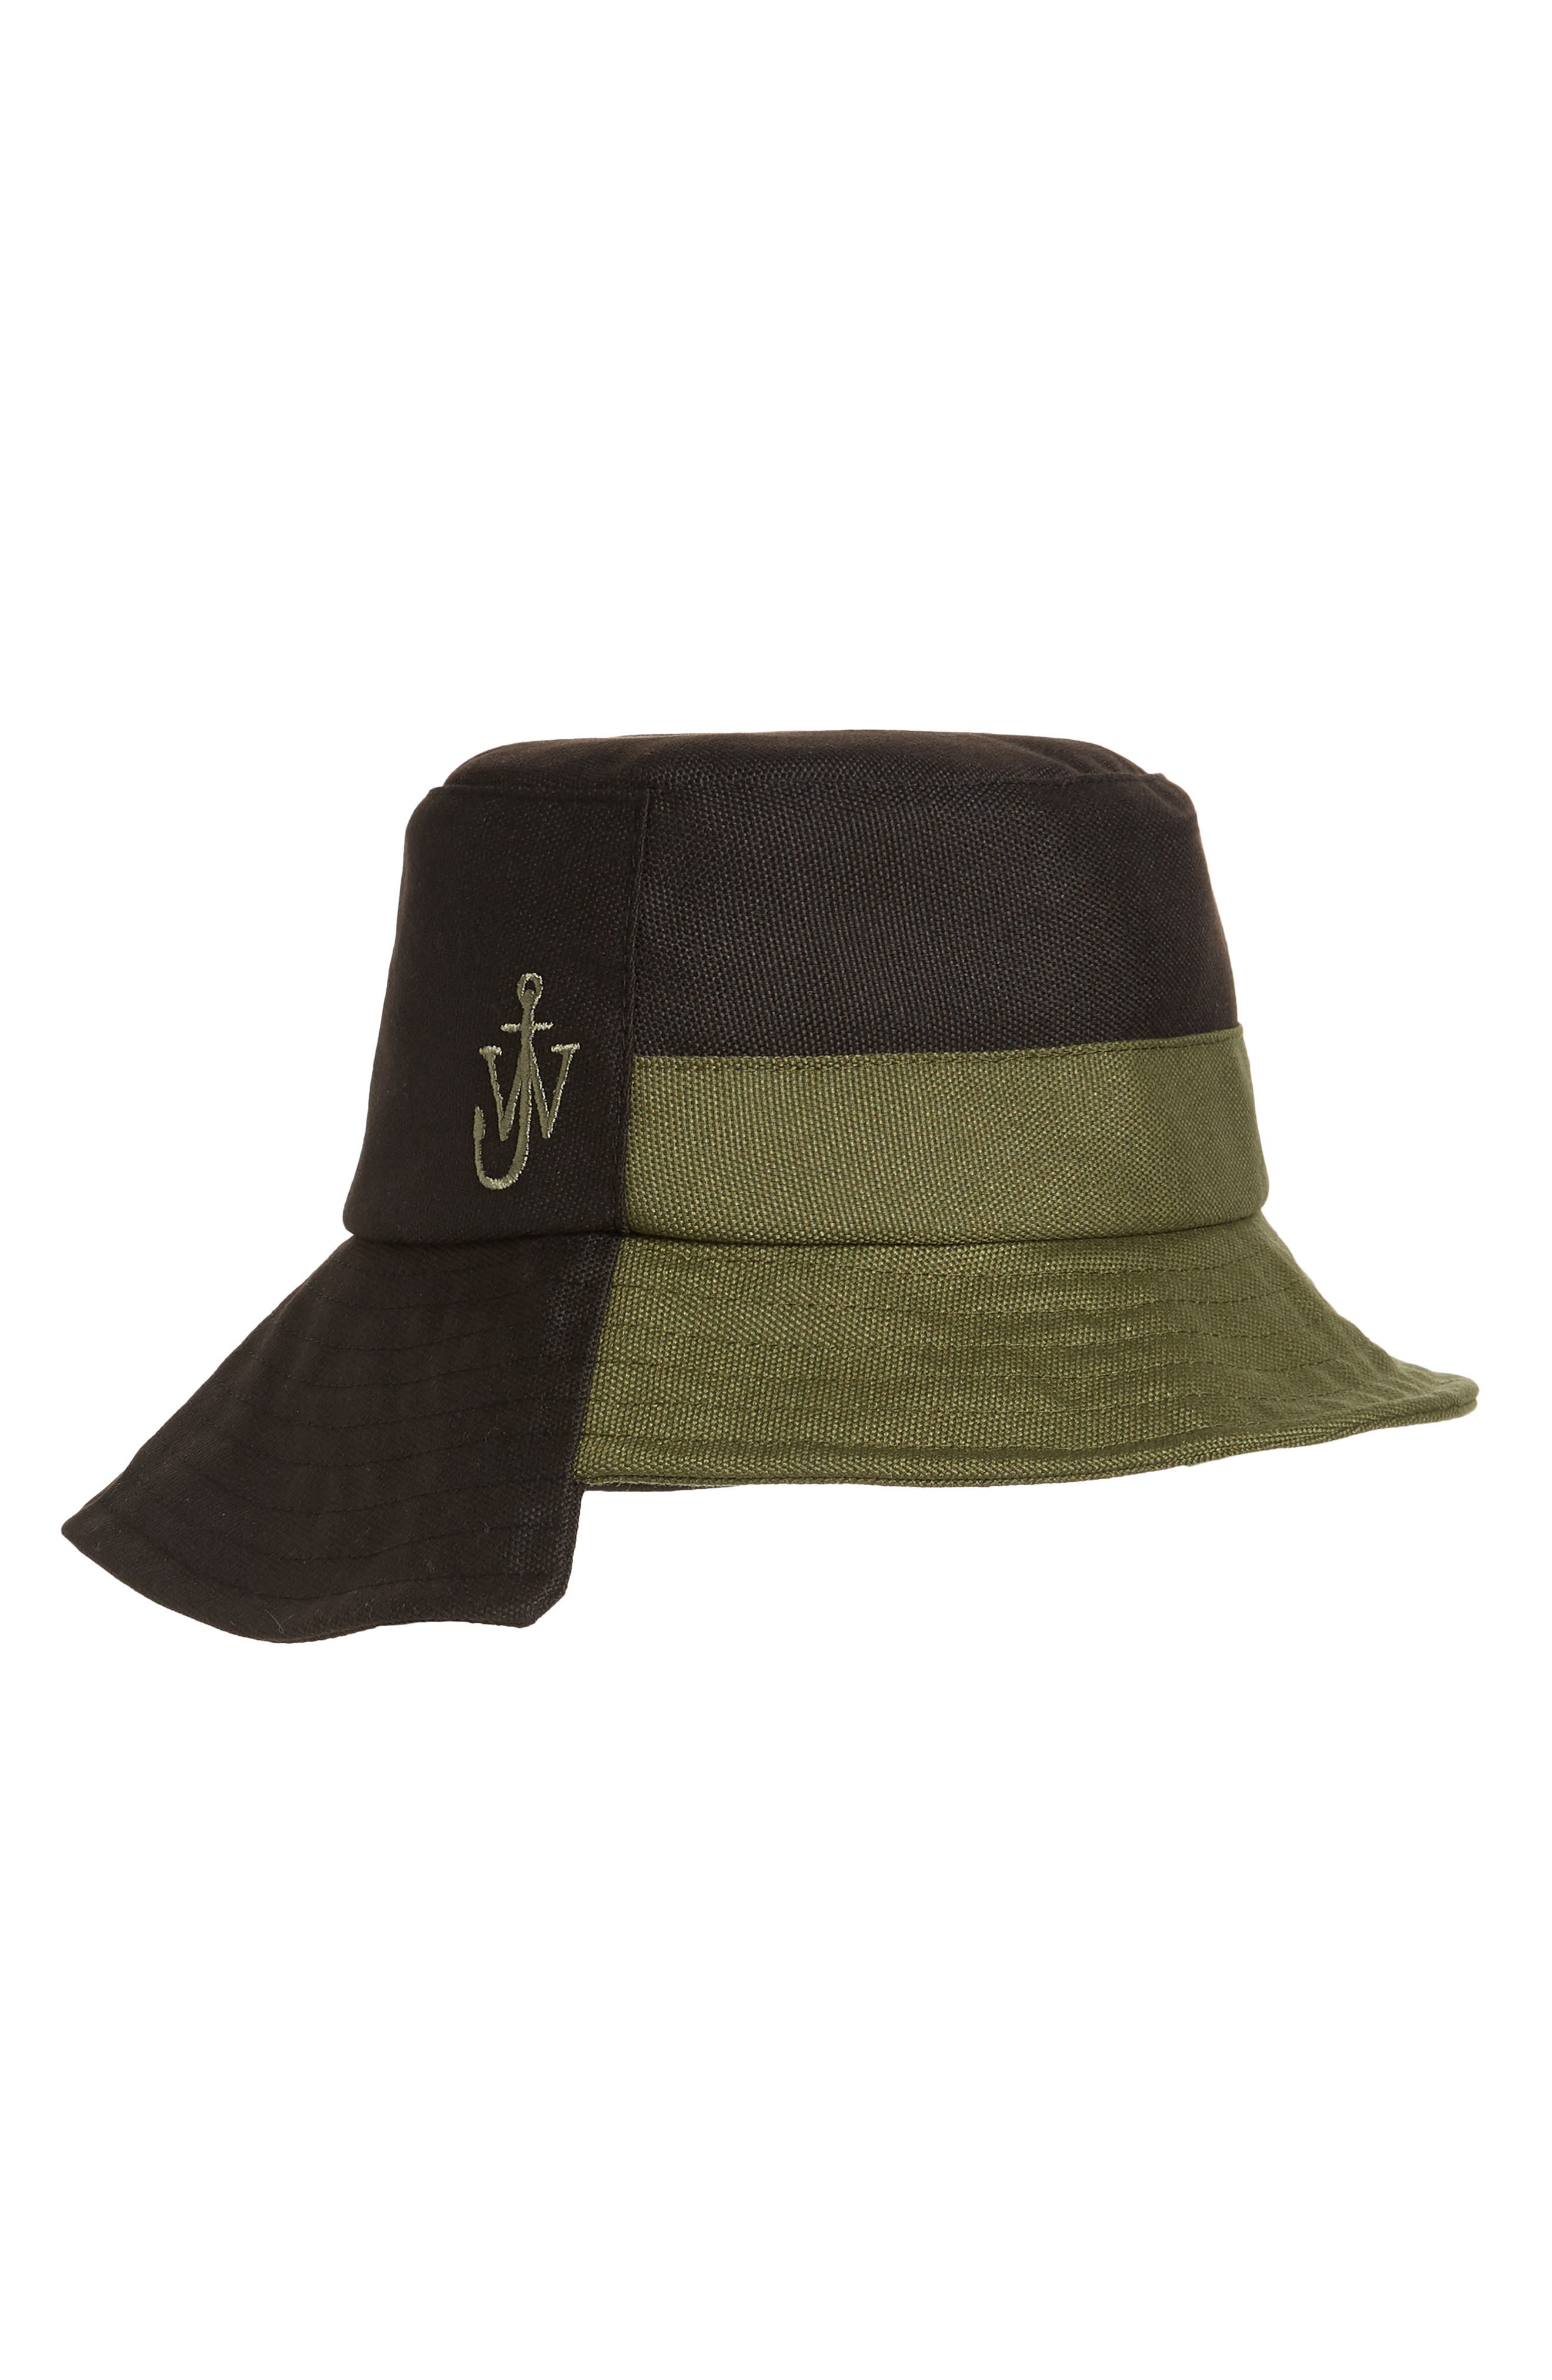 JW Anderson Asymmetrical Colorblock Bucket Hat in Black/Green